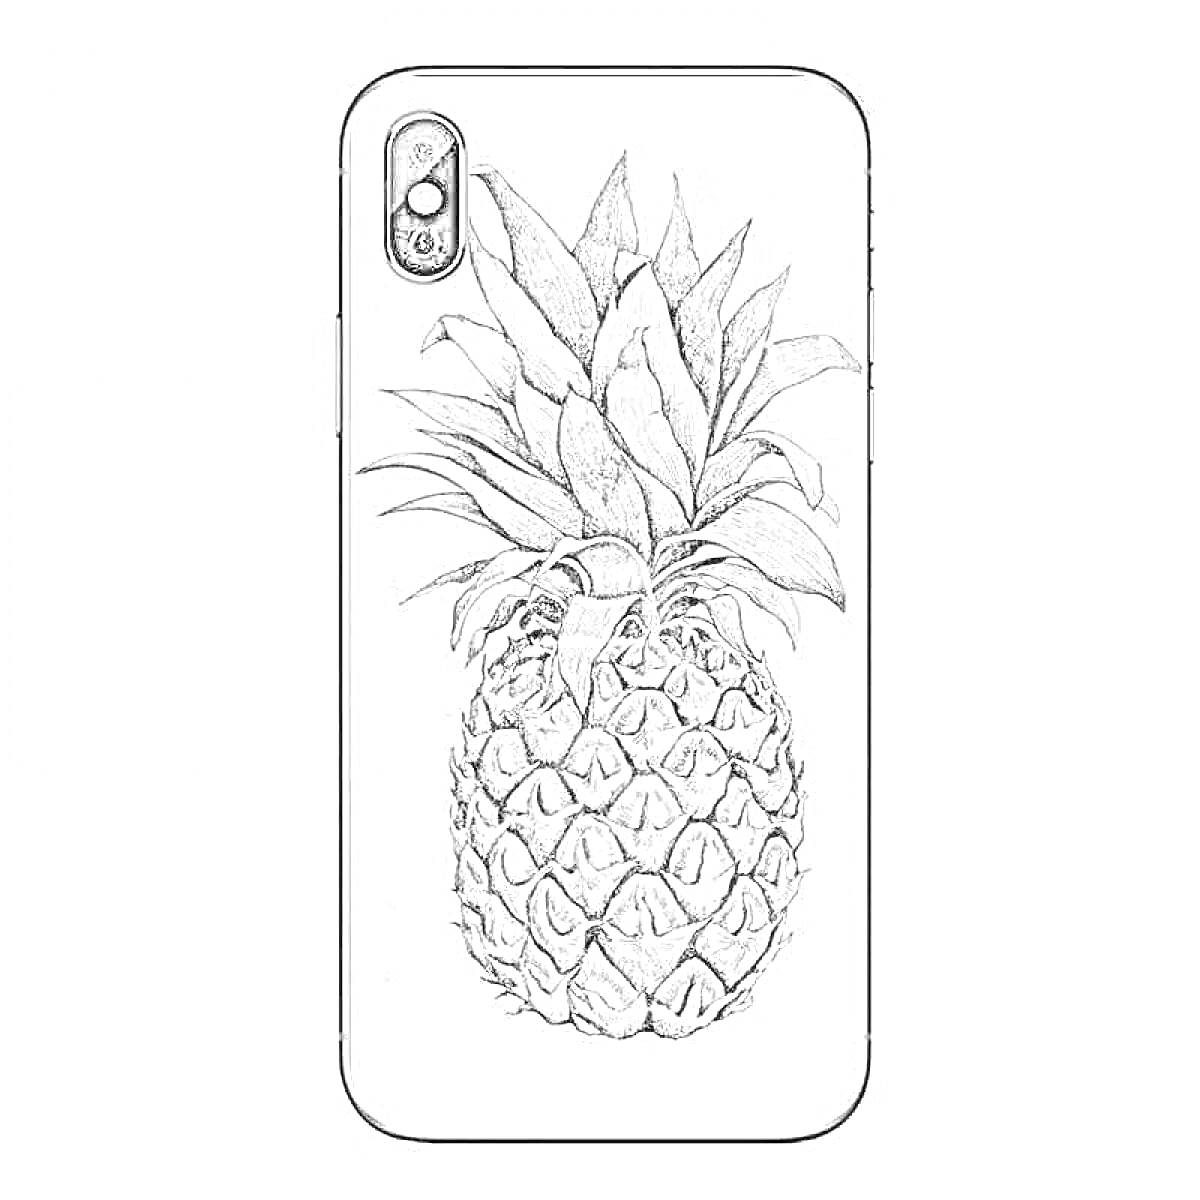 Раскраска iphone с рисунком ананаса, изображение с камерой заднего вида